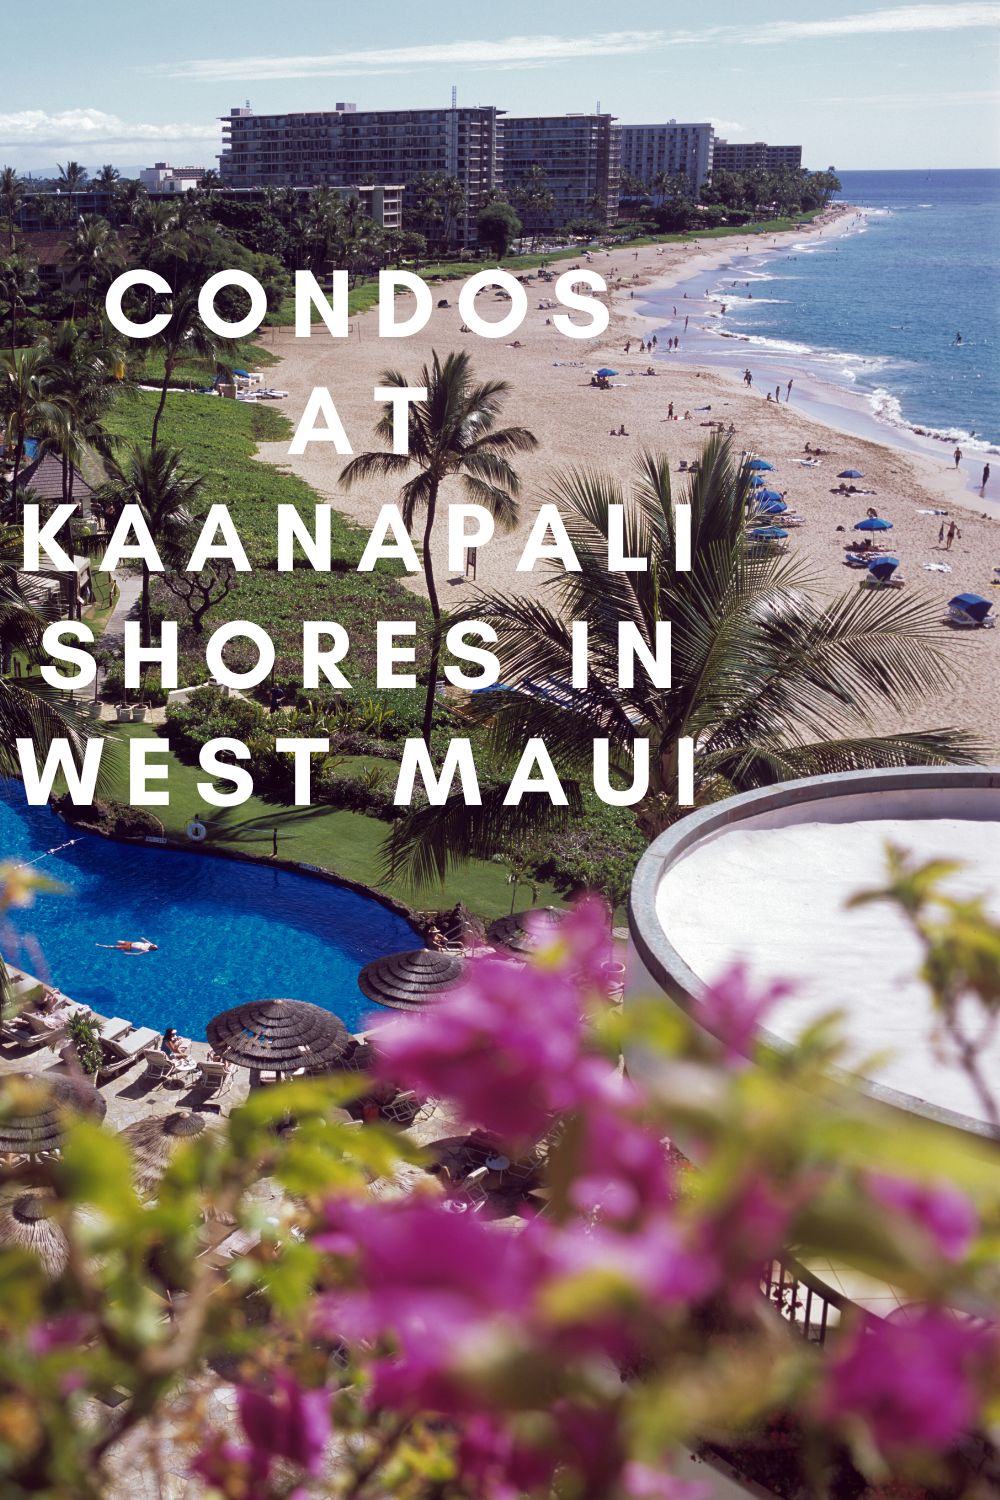 Condos at Kaanapali Shores in West Maui